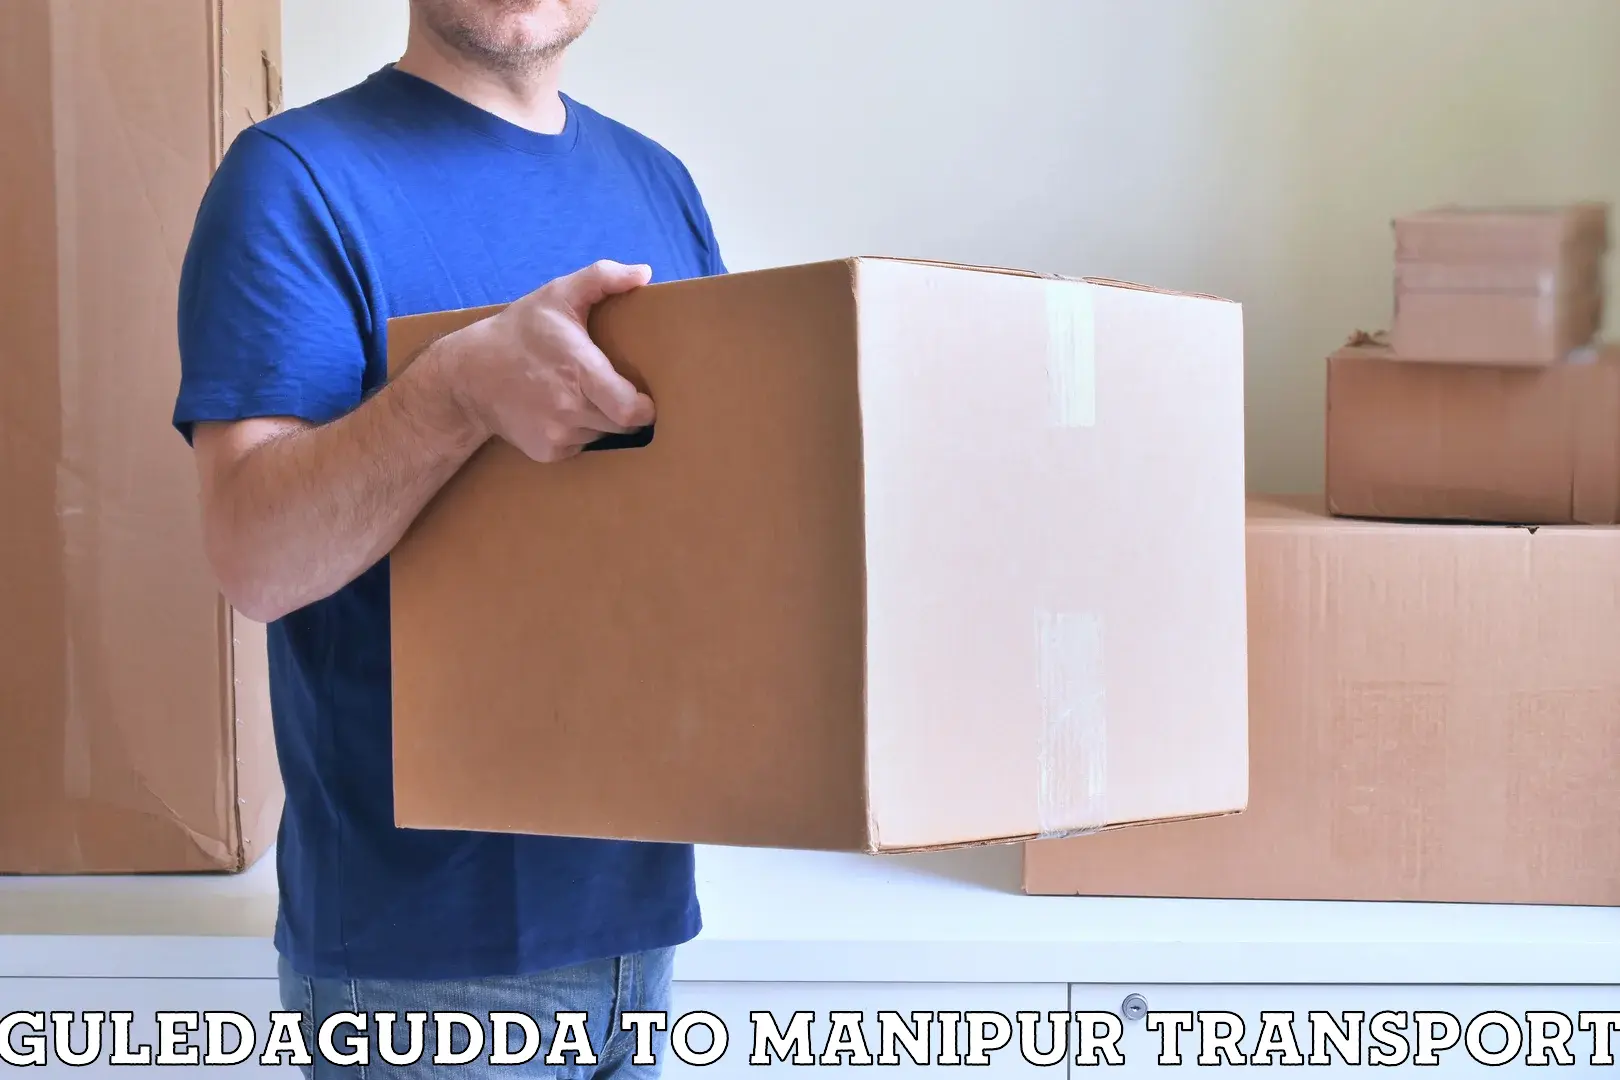 Online transport service Guledagudda to Manipur